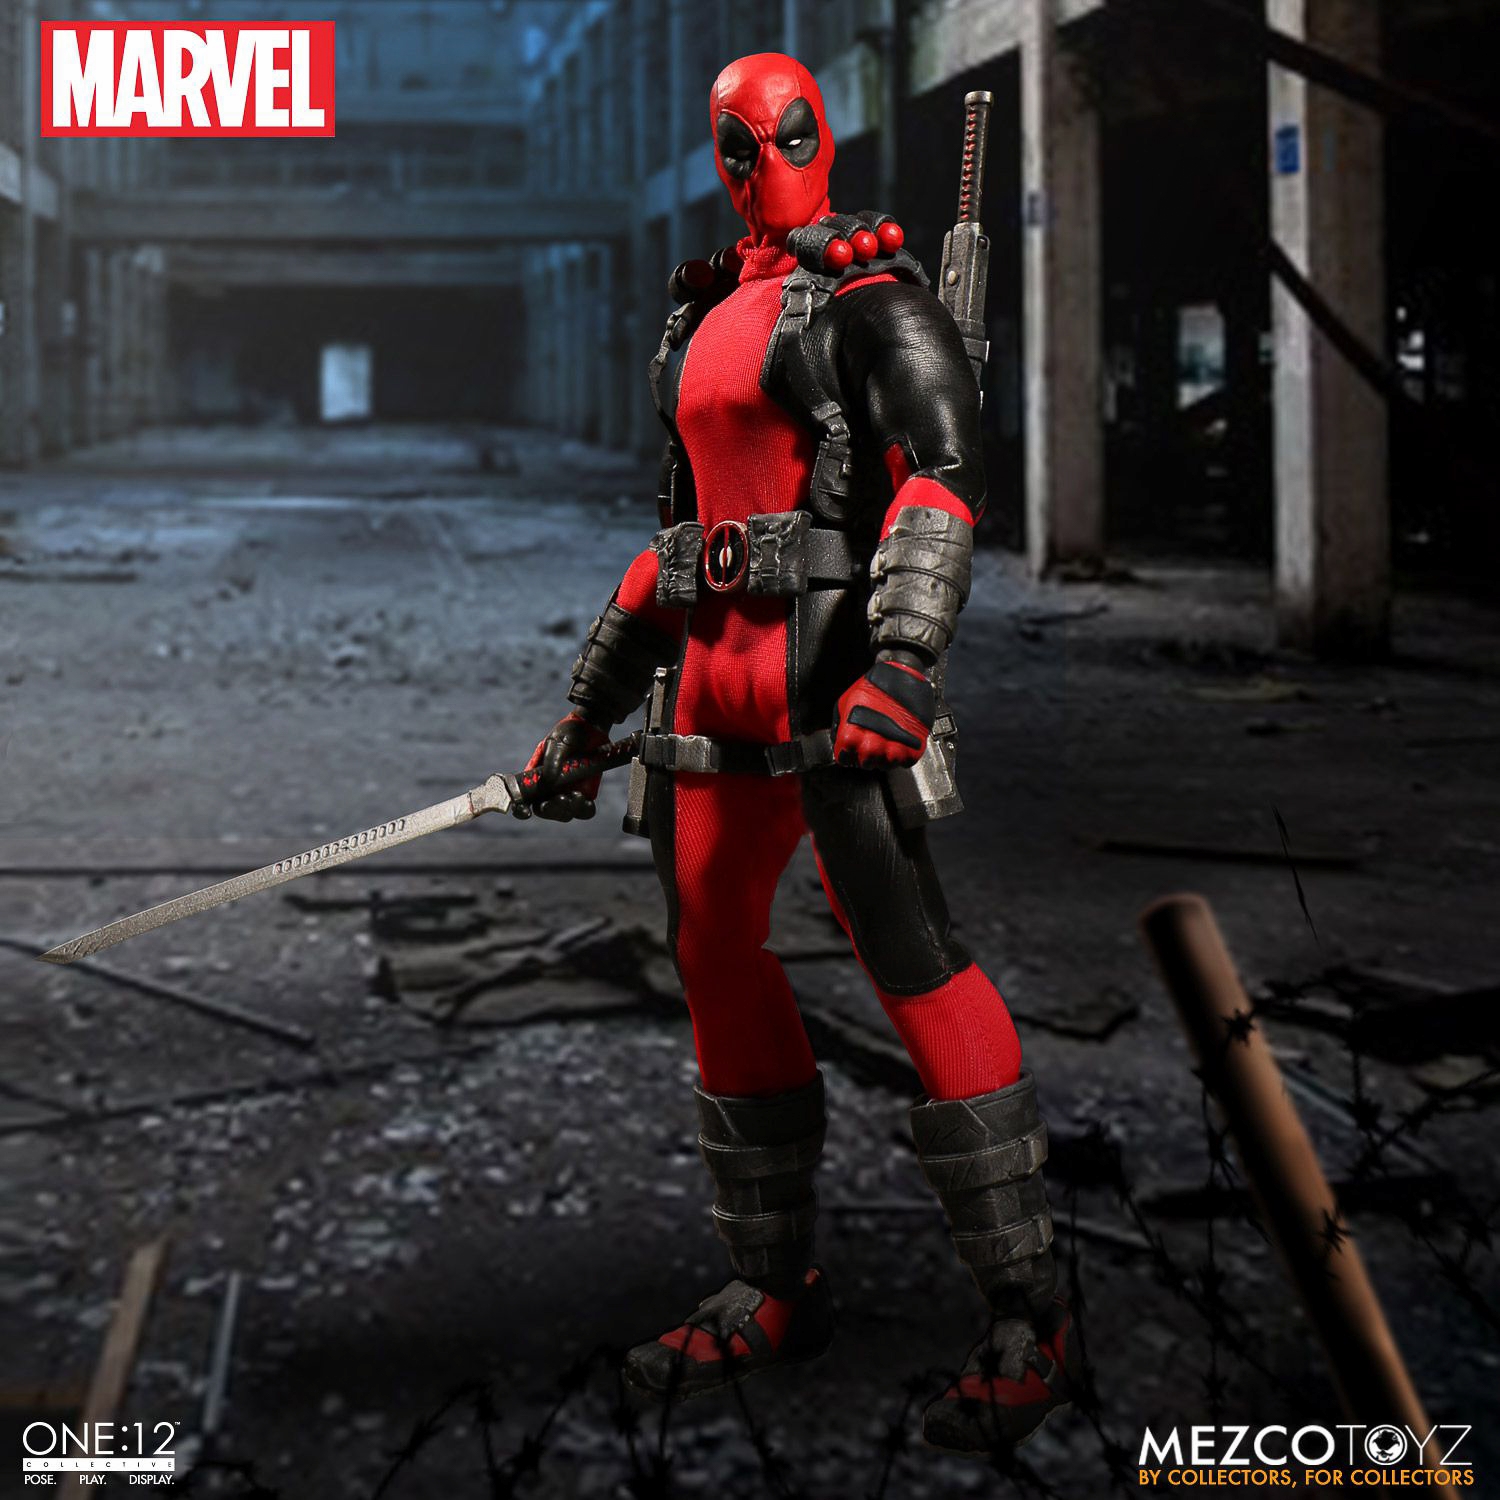 Mezco-Toyz-Marvel-Comics-Deadpool-One-12-001.jpg